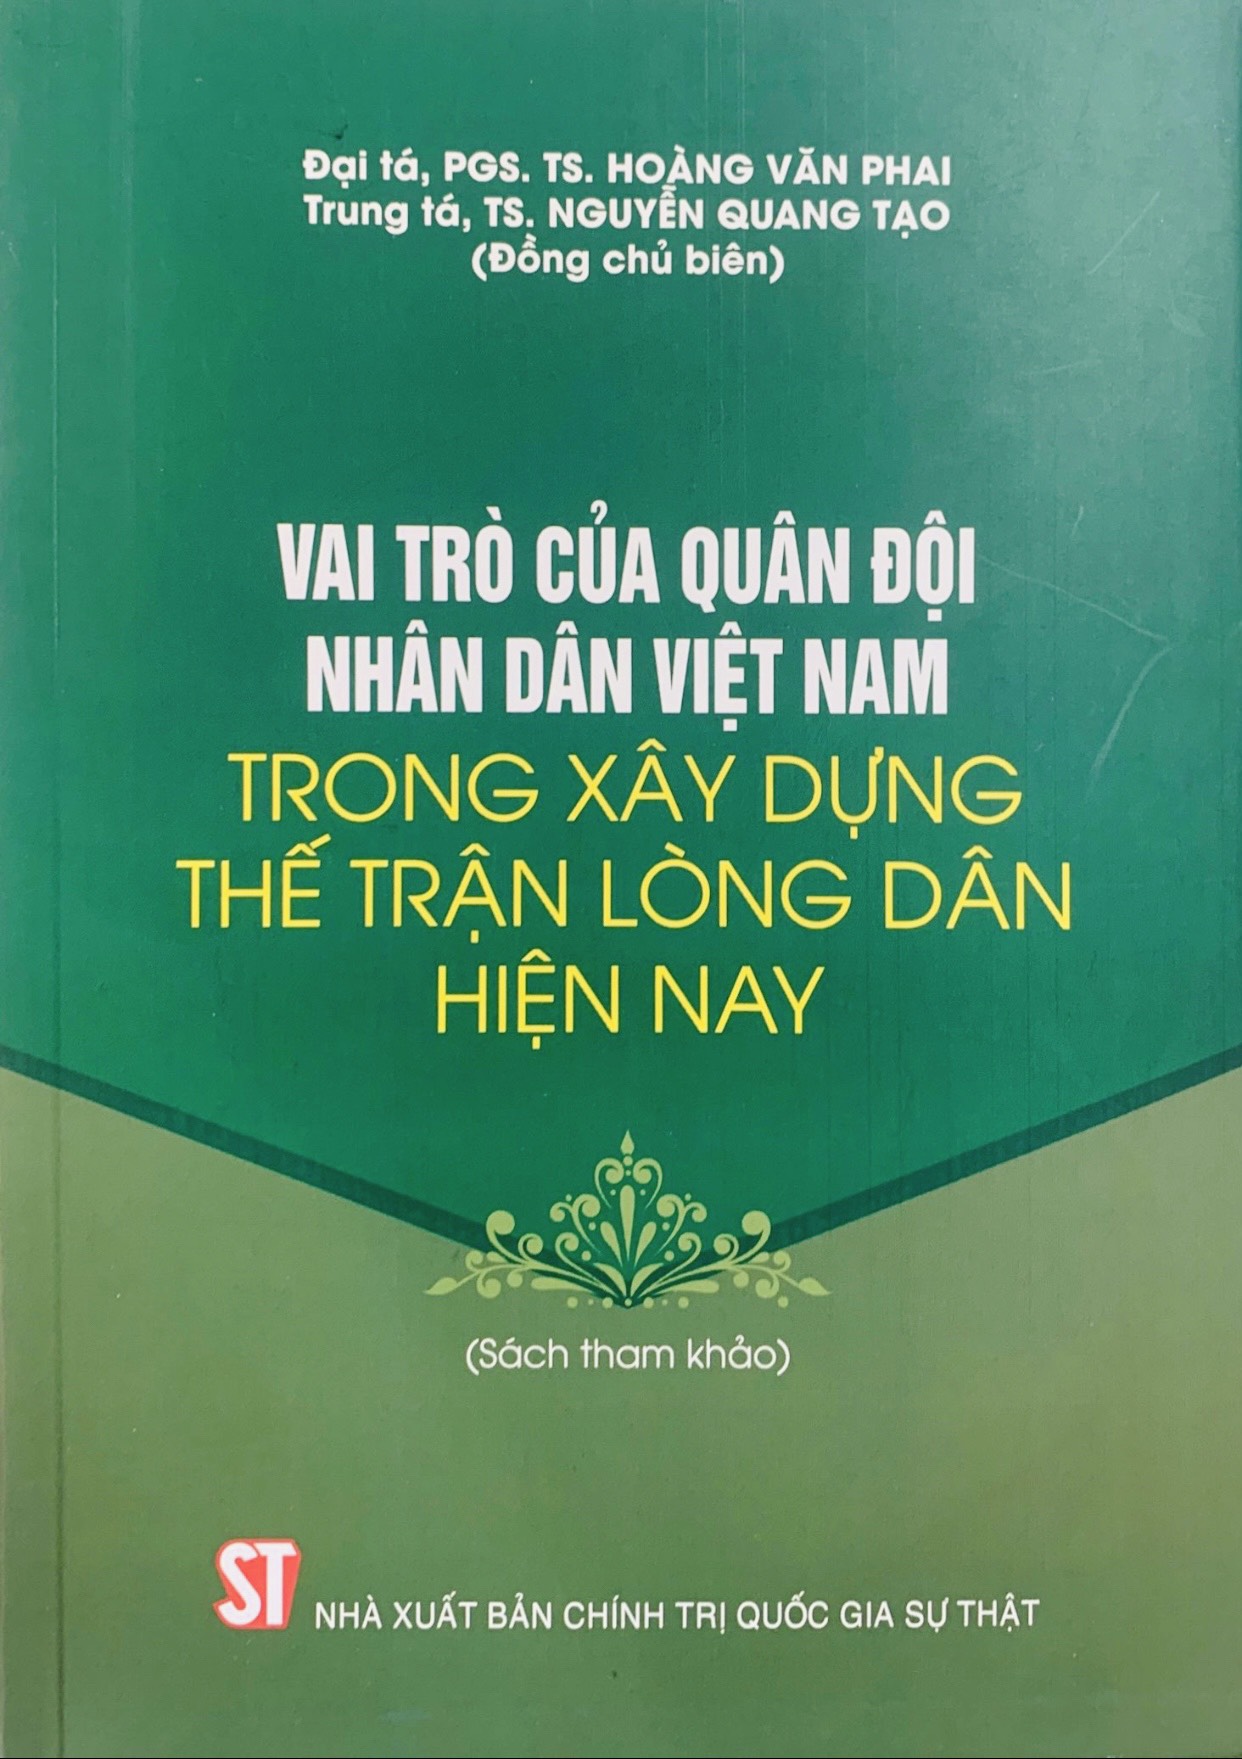 Vai trò của Quân đội nhân dân Việt Nam trong xây dựng thế trận lòng dân hiện nay